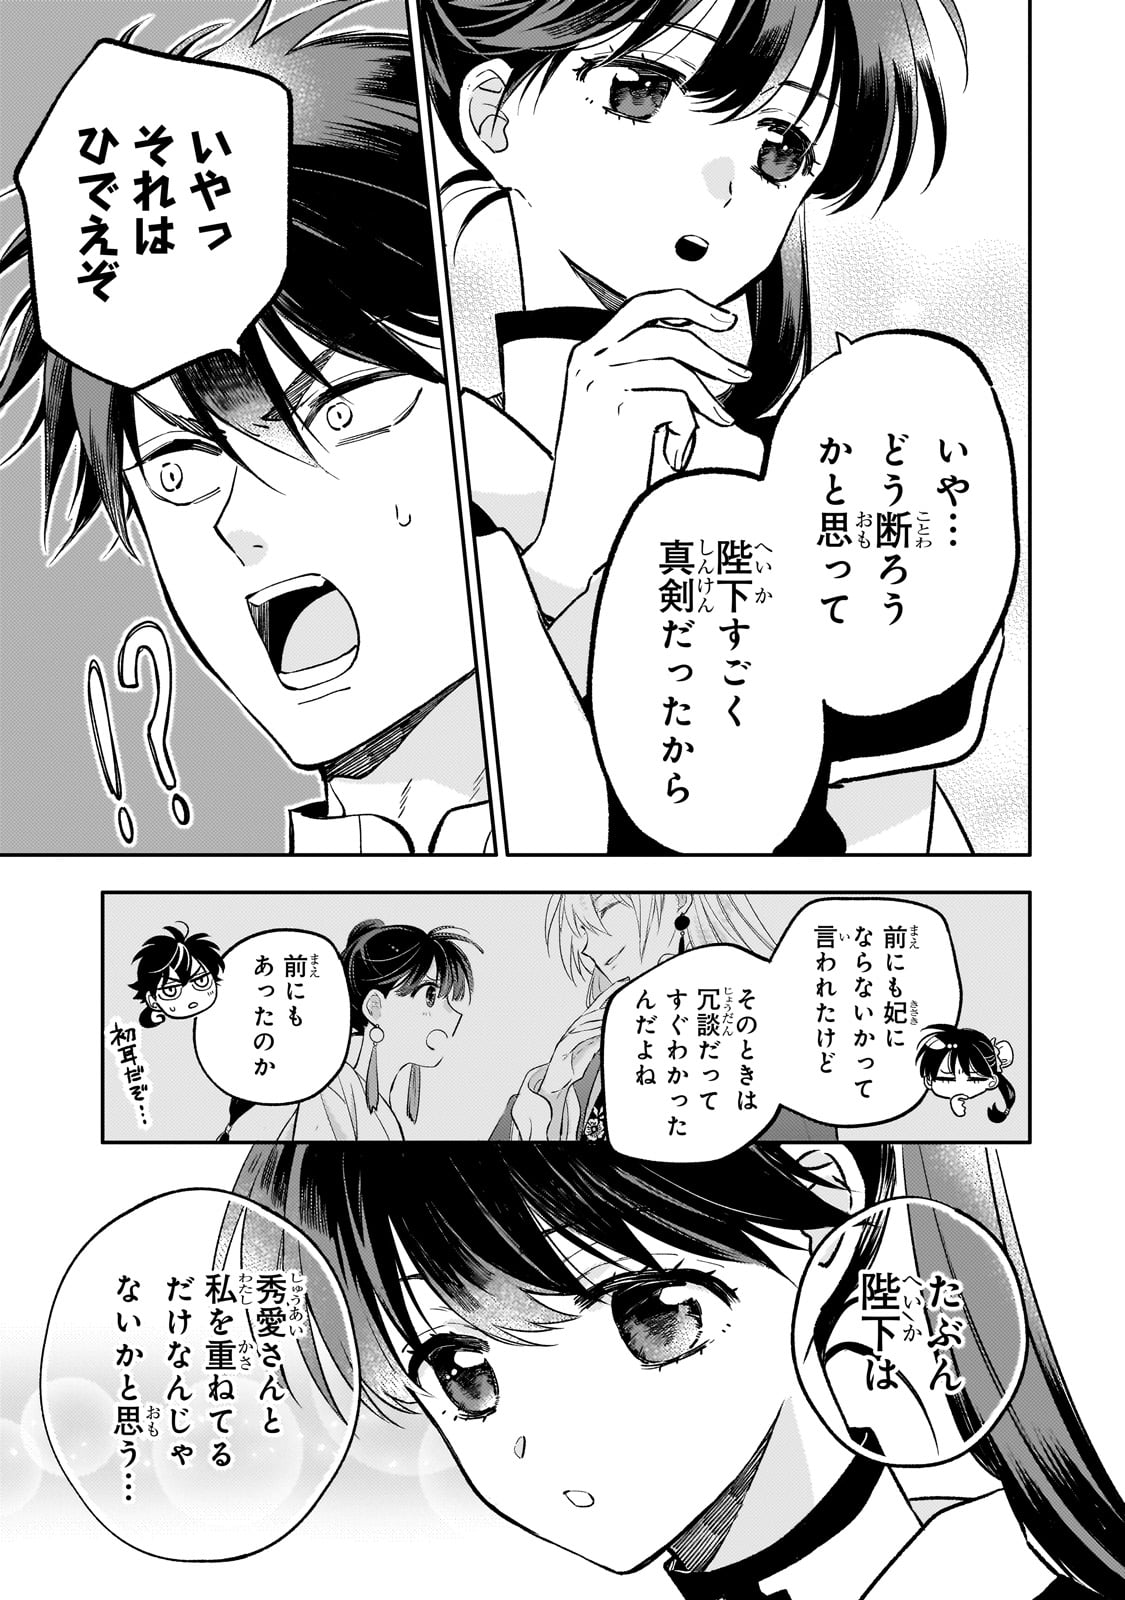 Koukyu no Zatsuyouki - Chapter 27 - Page 23